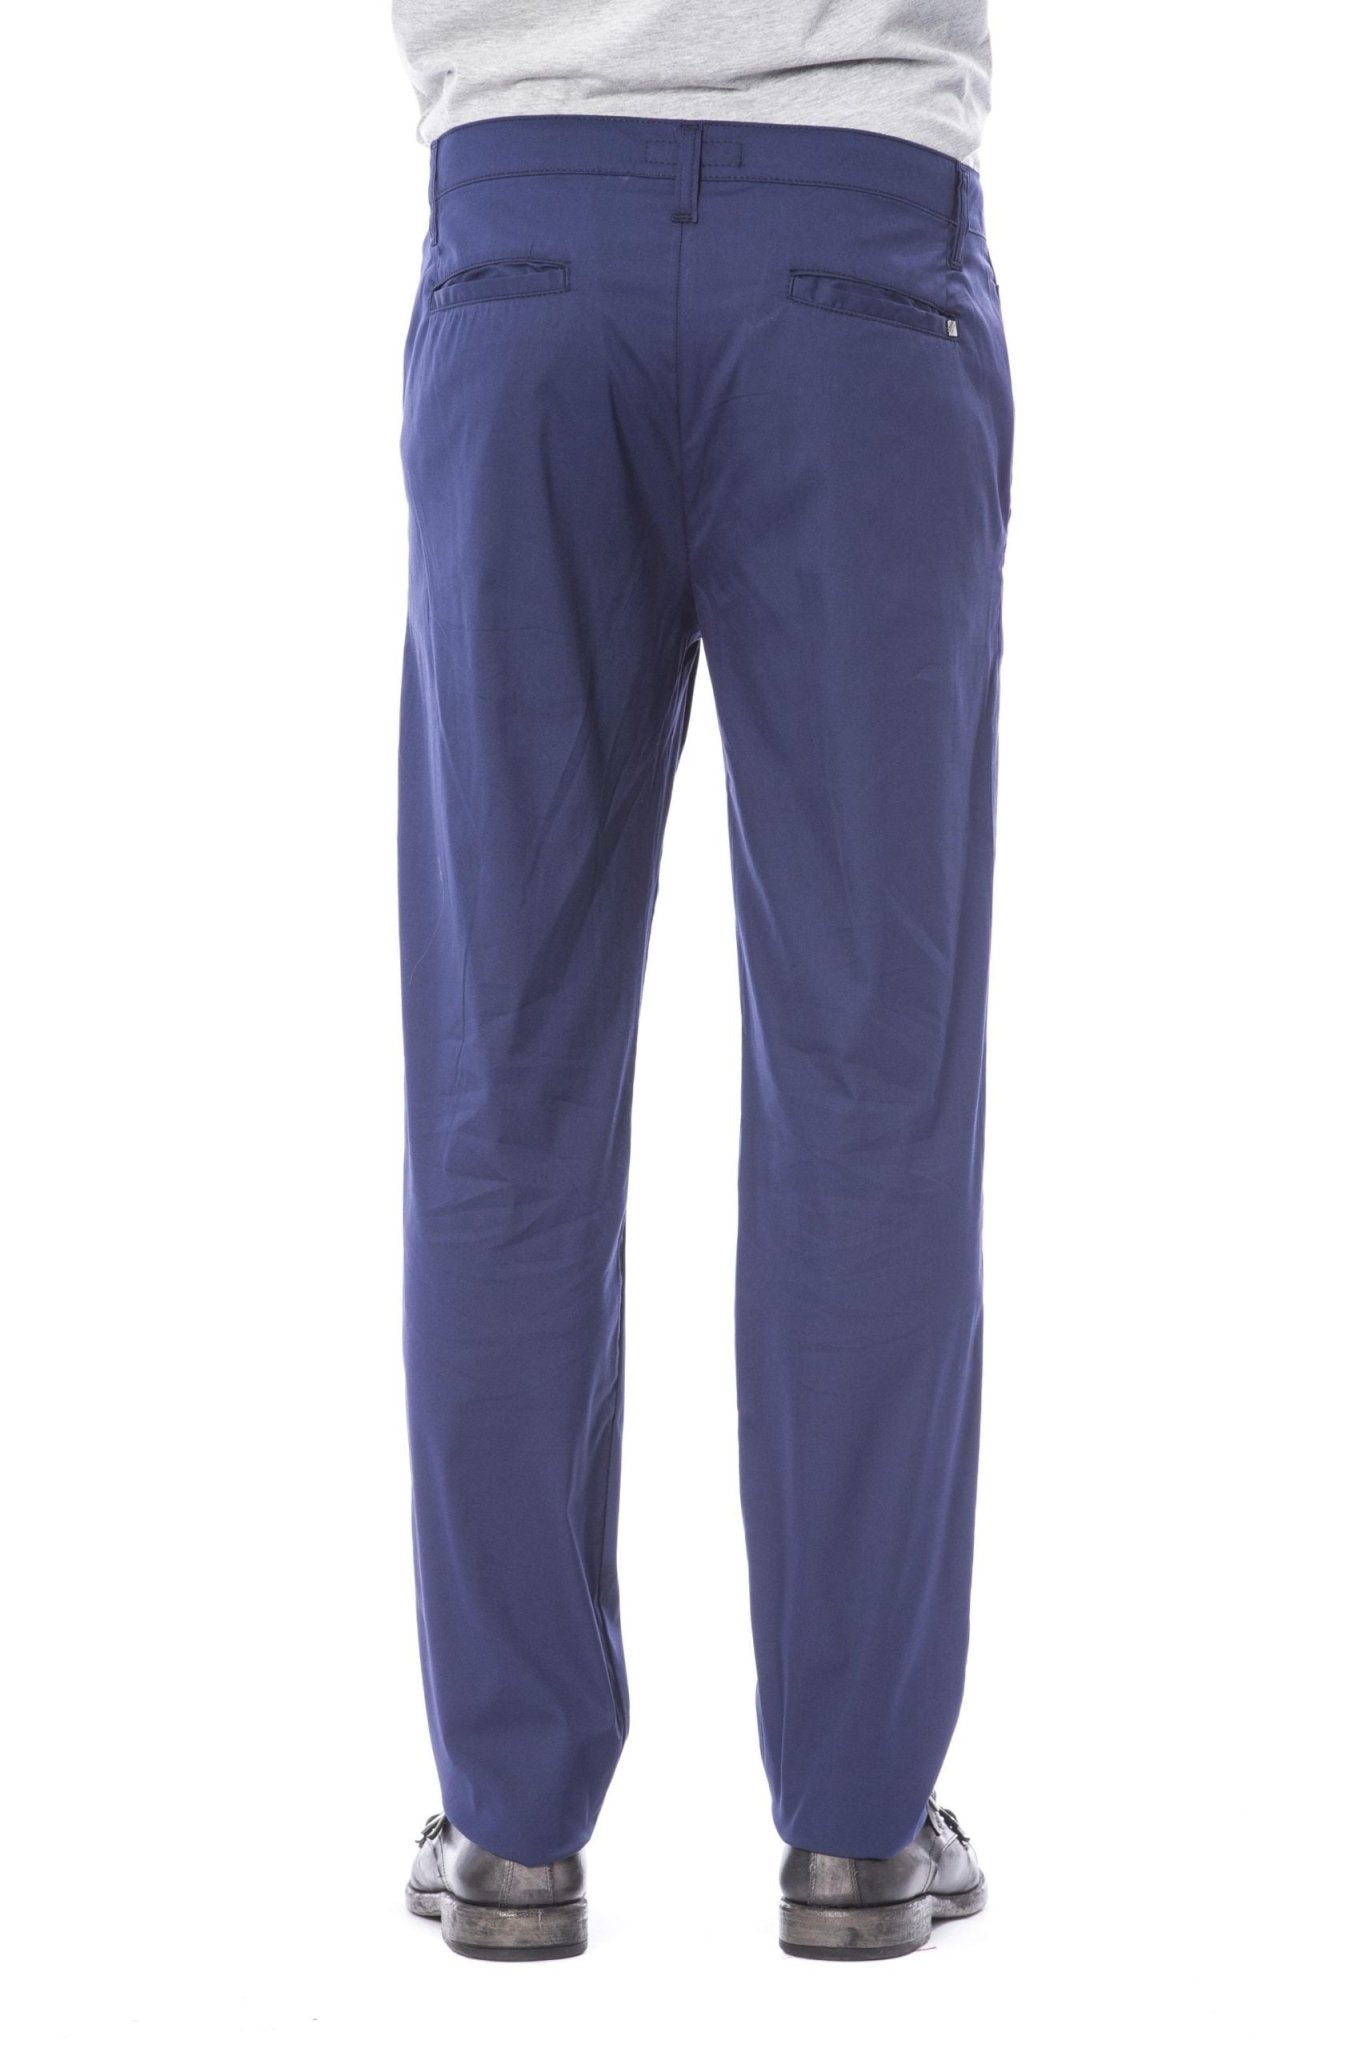 Verri Blue Cotton Jeans & Pant - Fizigo